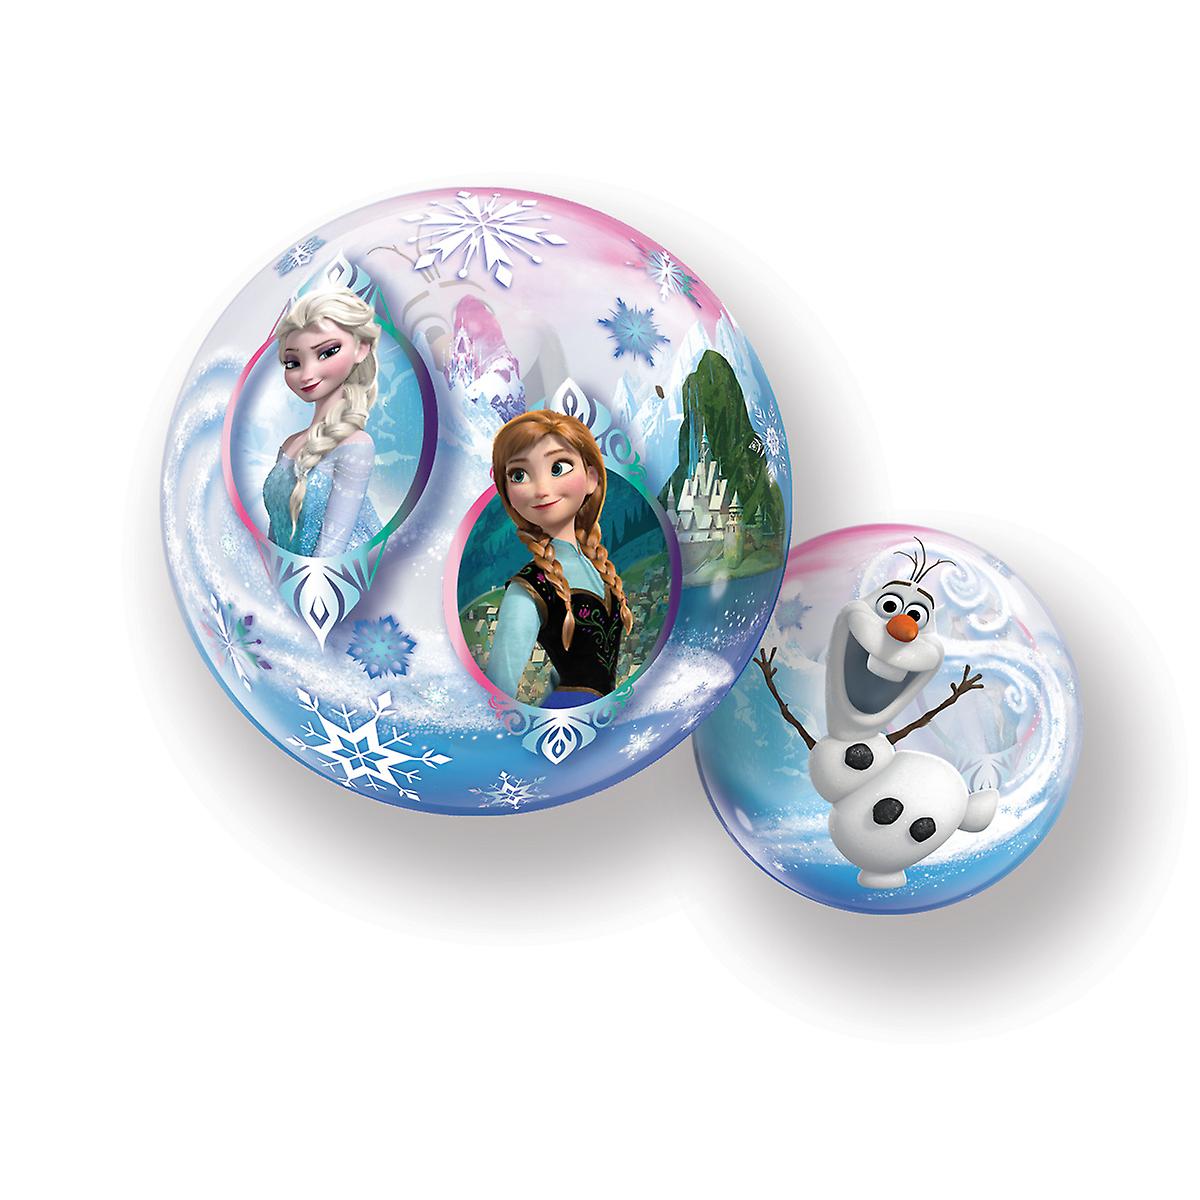 Bubble Ballon - Frozen - 56cm